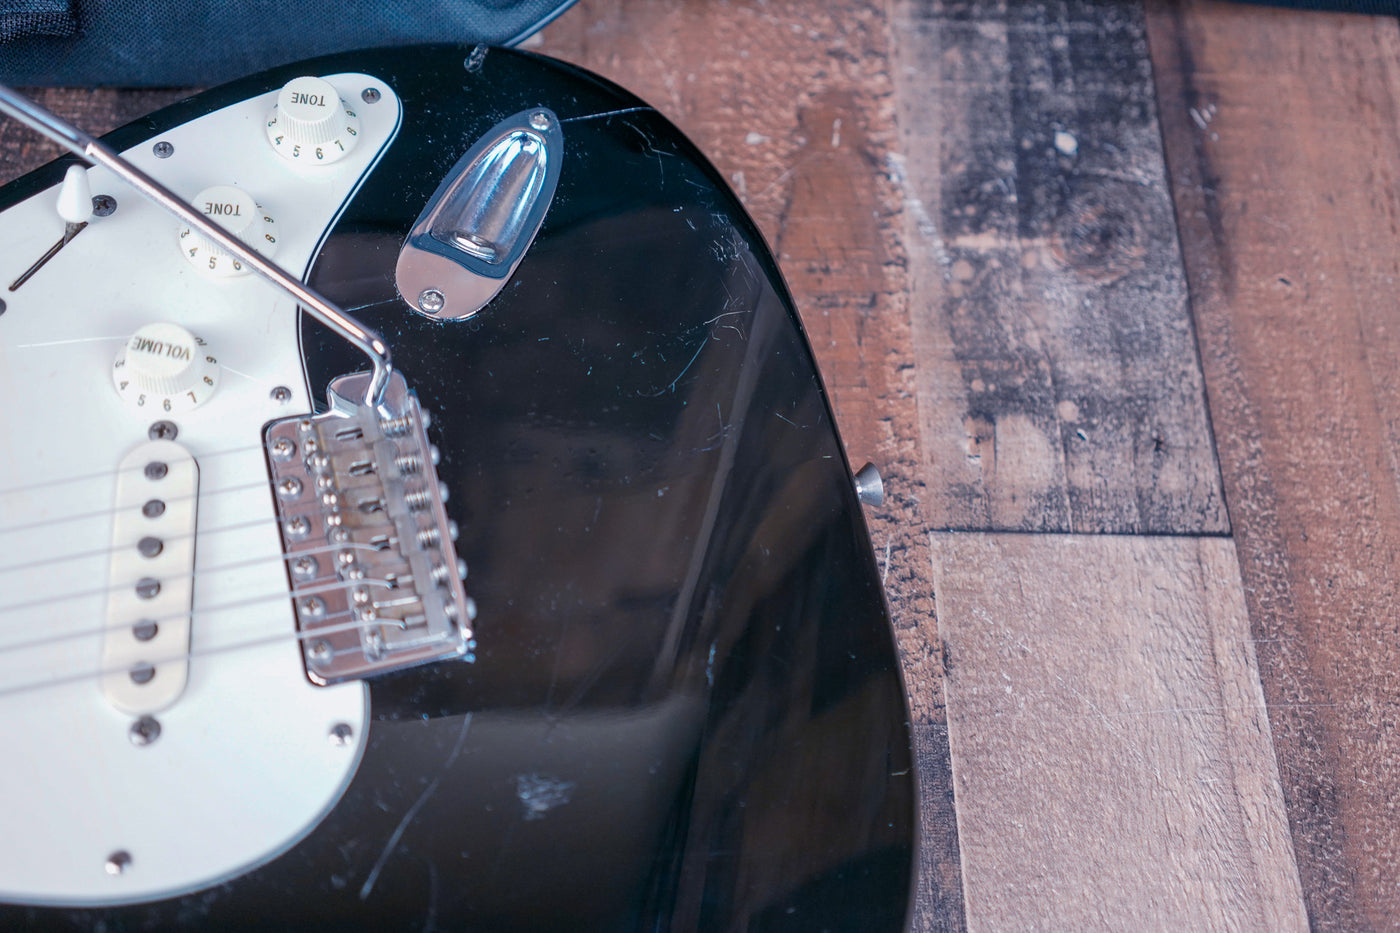 Fender Standard Stratocaster MIJ 1997 Black Made in Japan Rosewood Fretboard w/ Bag